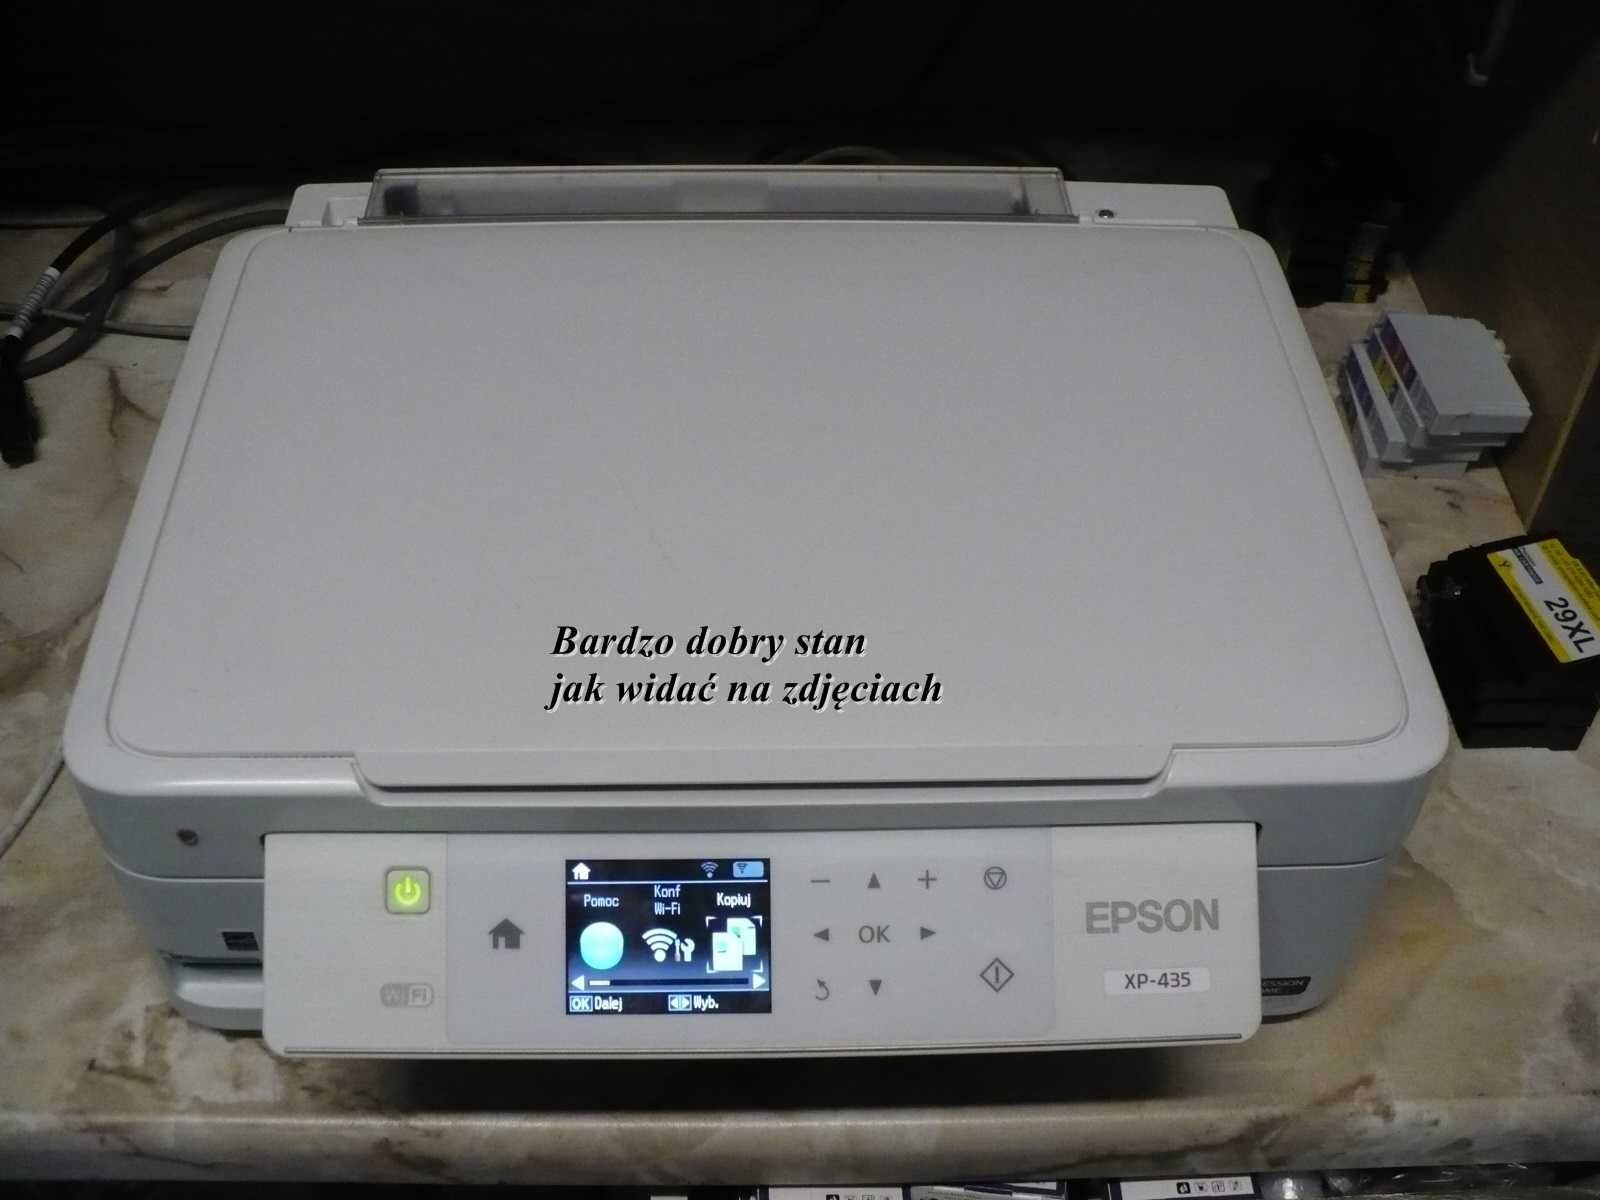 Epson XP-435 WiFi druk z chmury, malutka na taniuutkie tusze